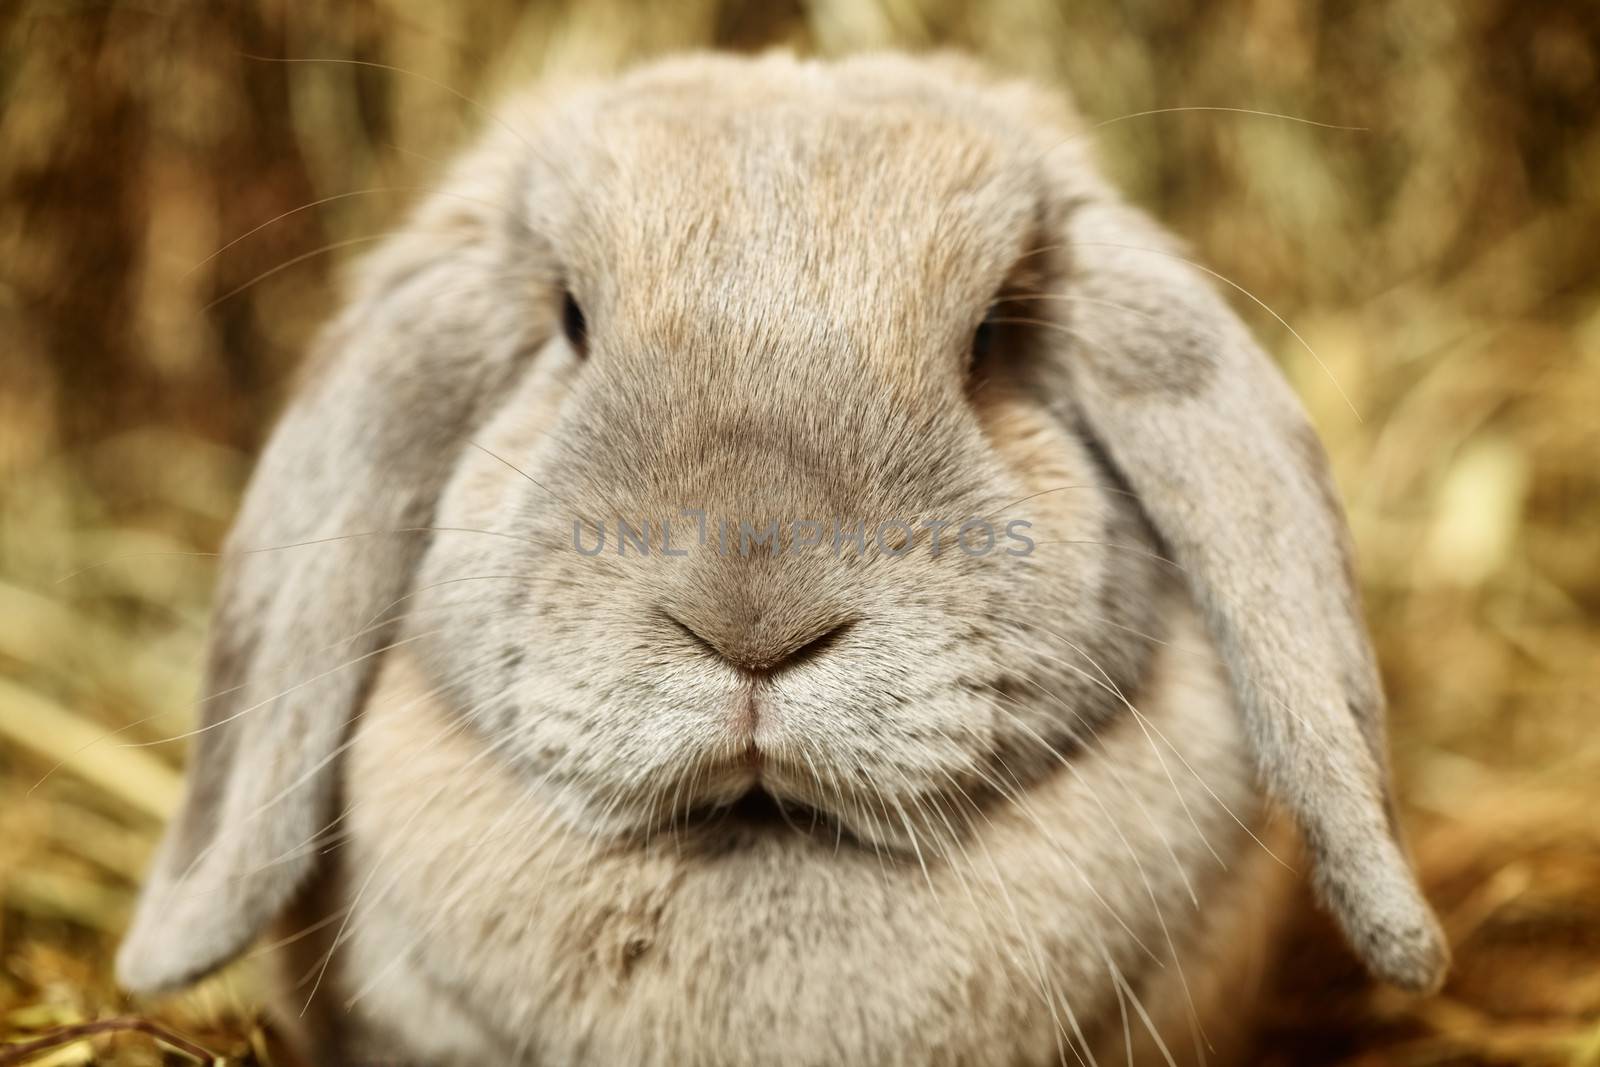 Lop-earred Rabbit by petr_malyshev